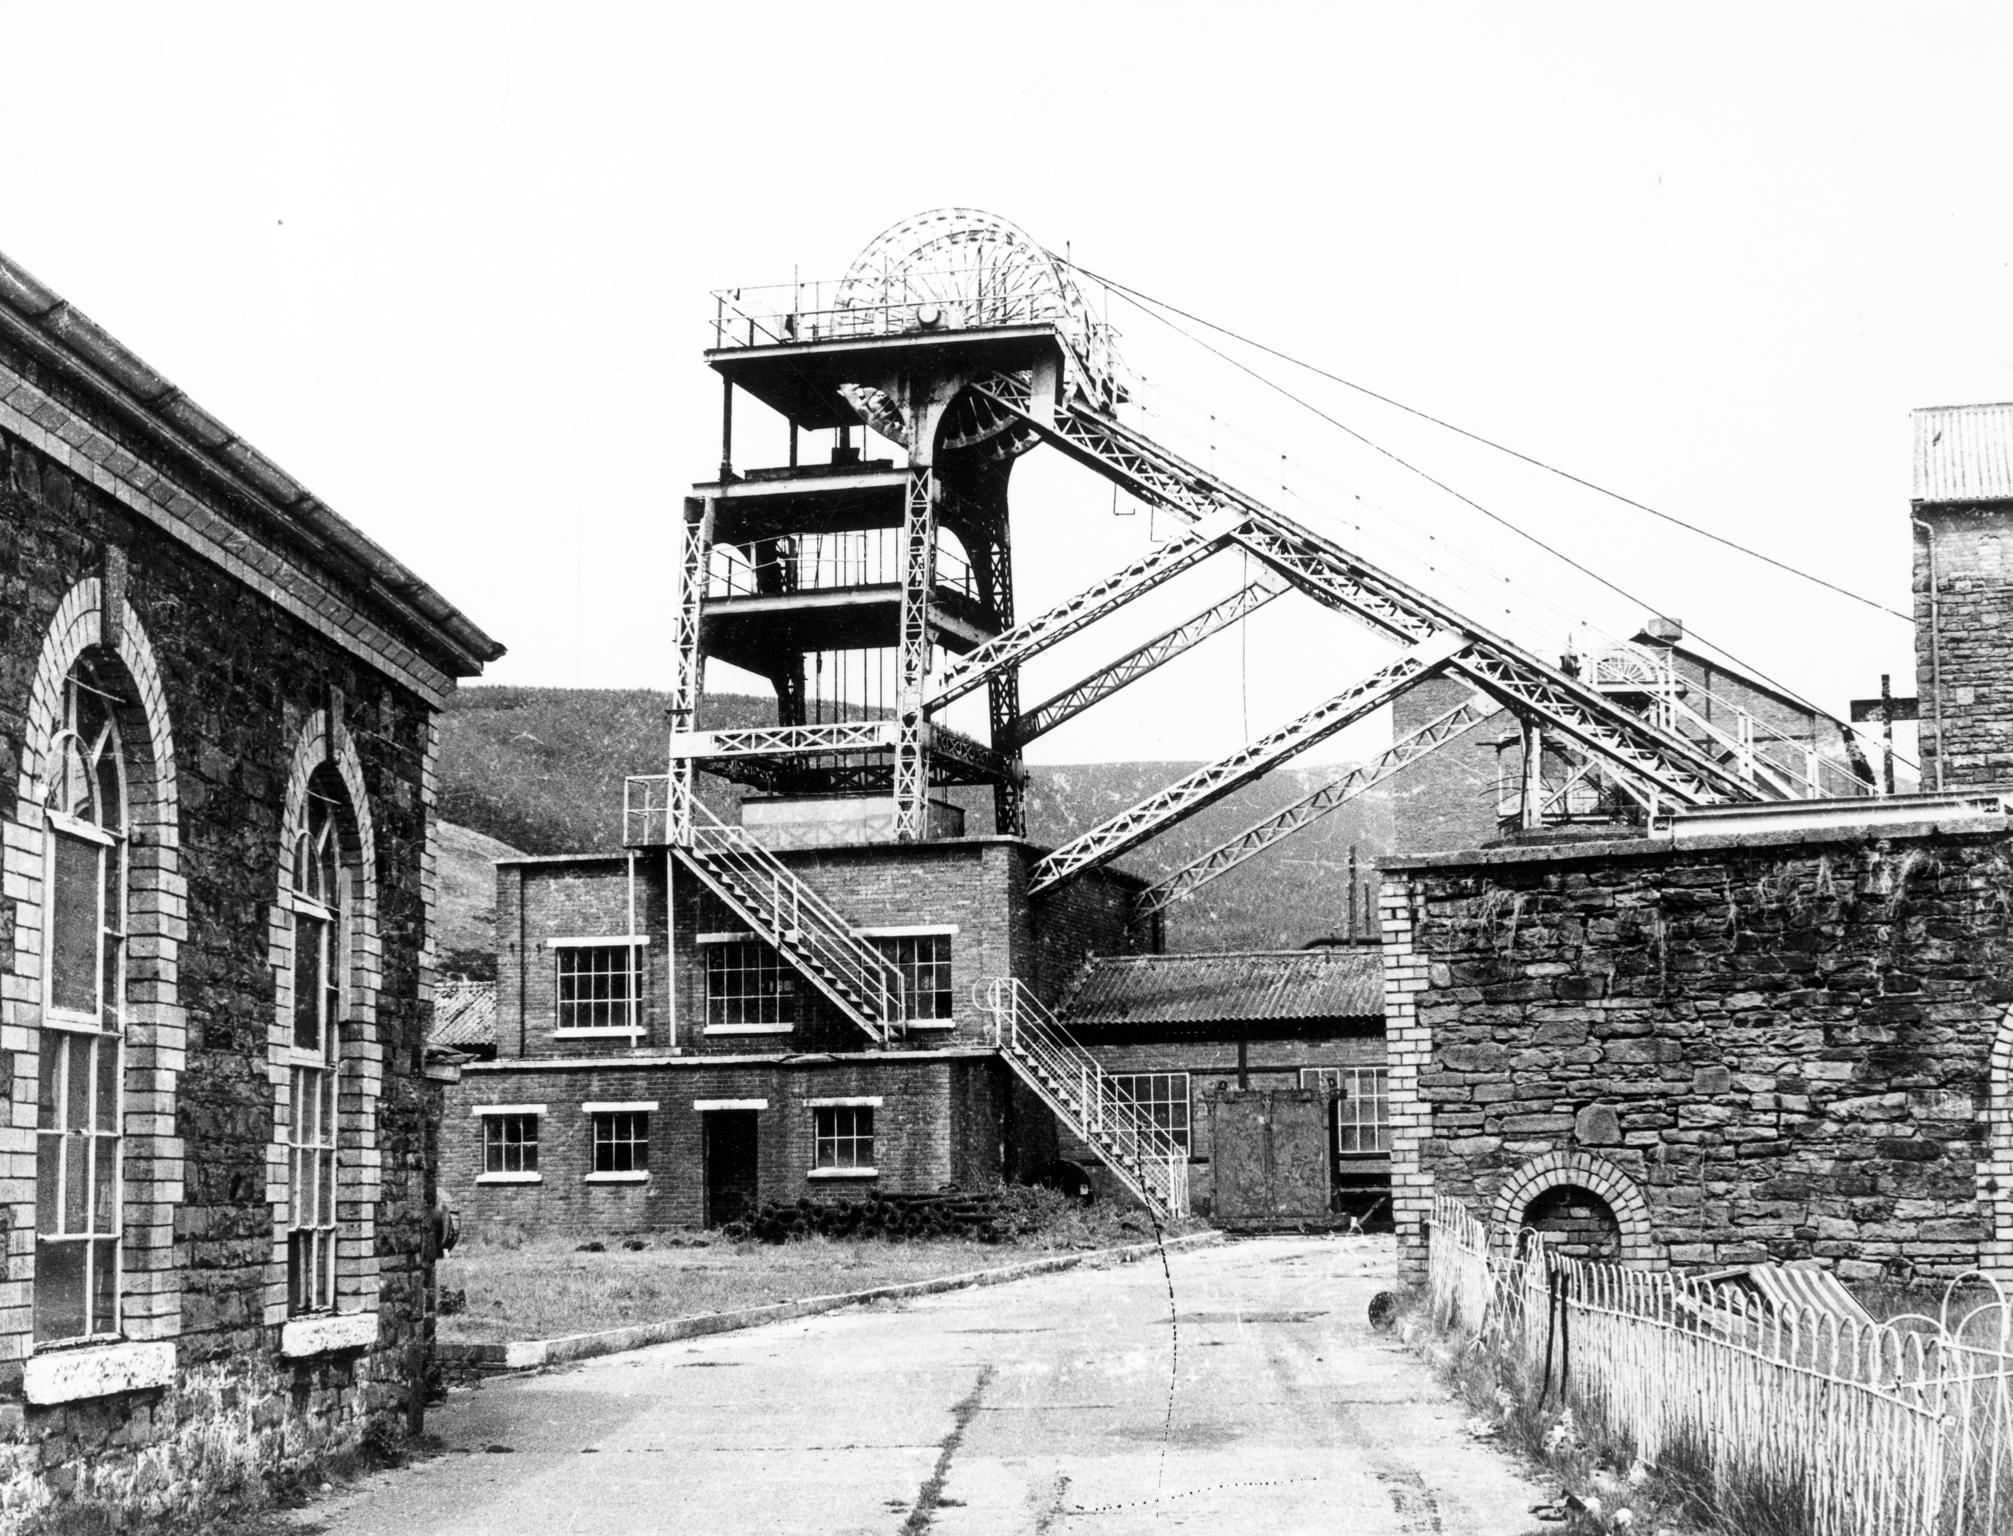 Ffaldau Colliery, photograph